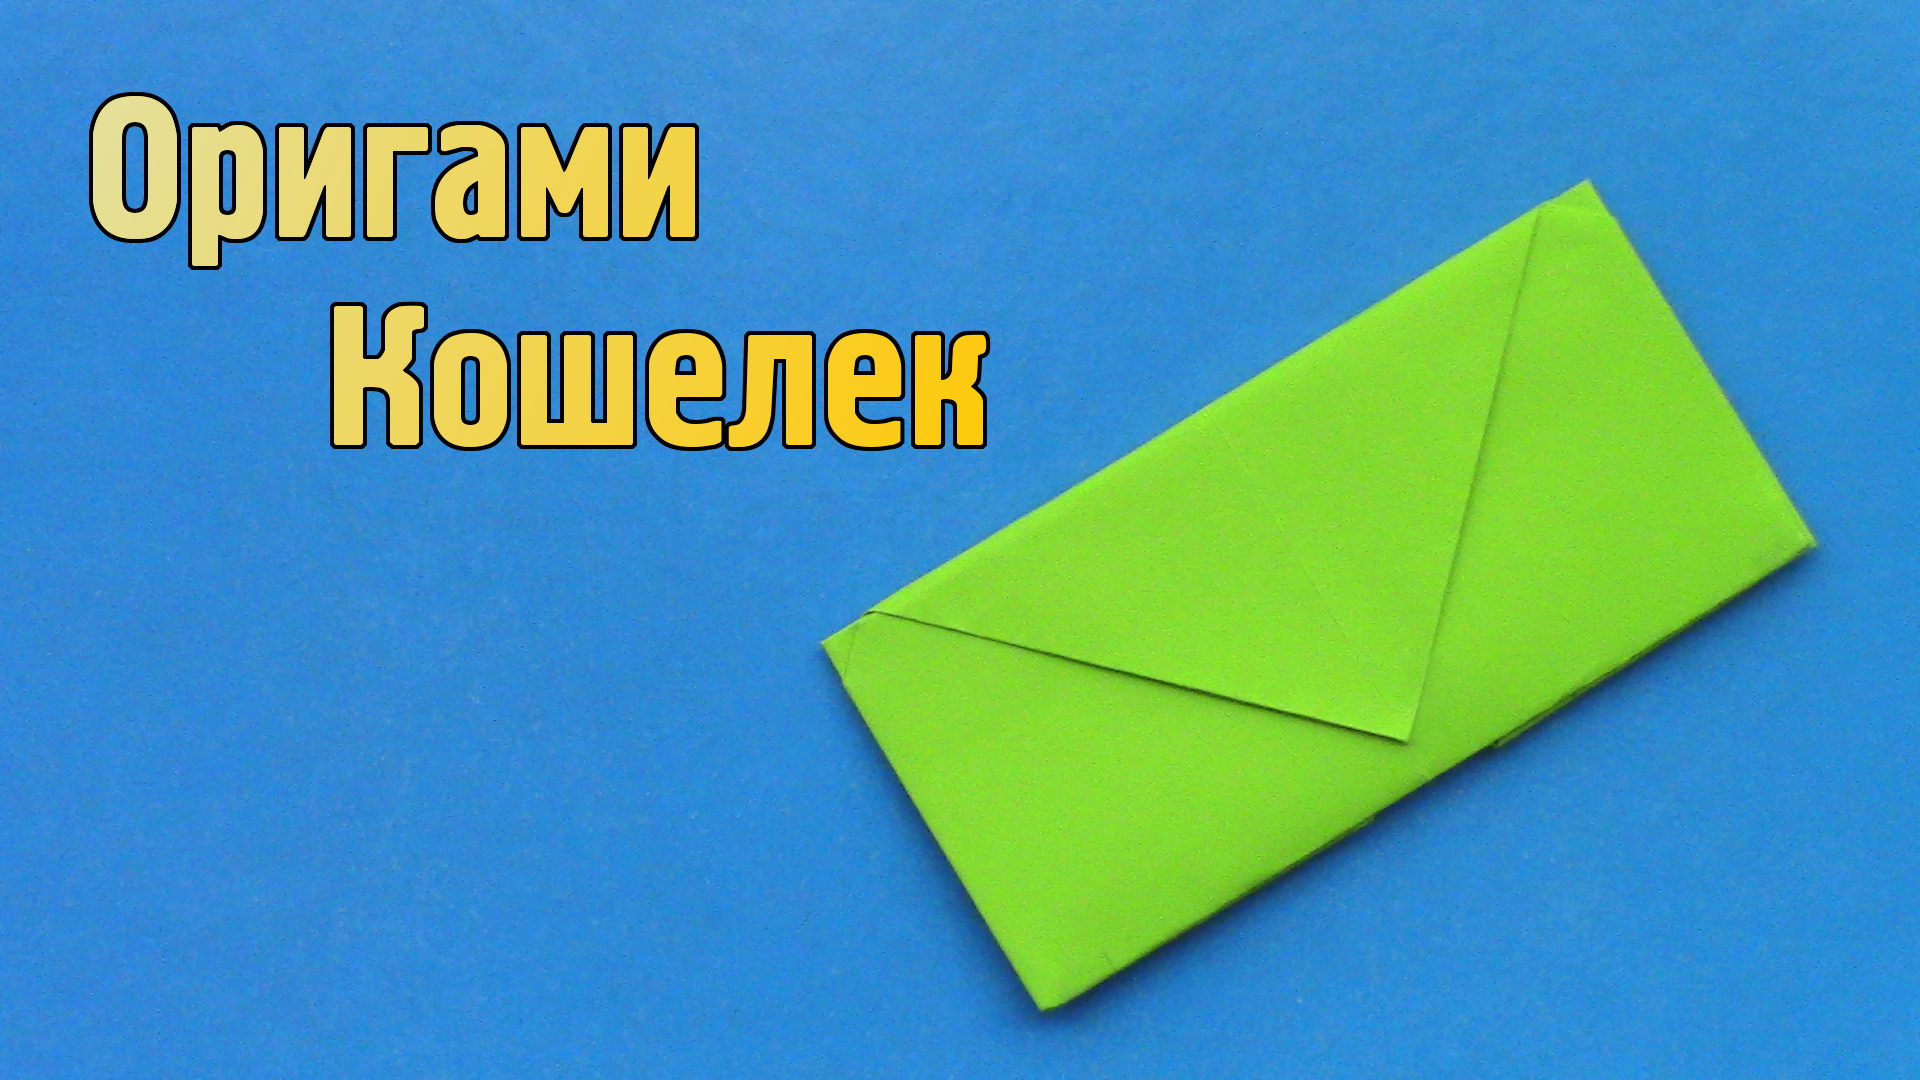 Как сделать Кошелёк из бумаги своими руками из А4 | Бумажный оригами Кошелек для детей без клея